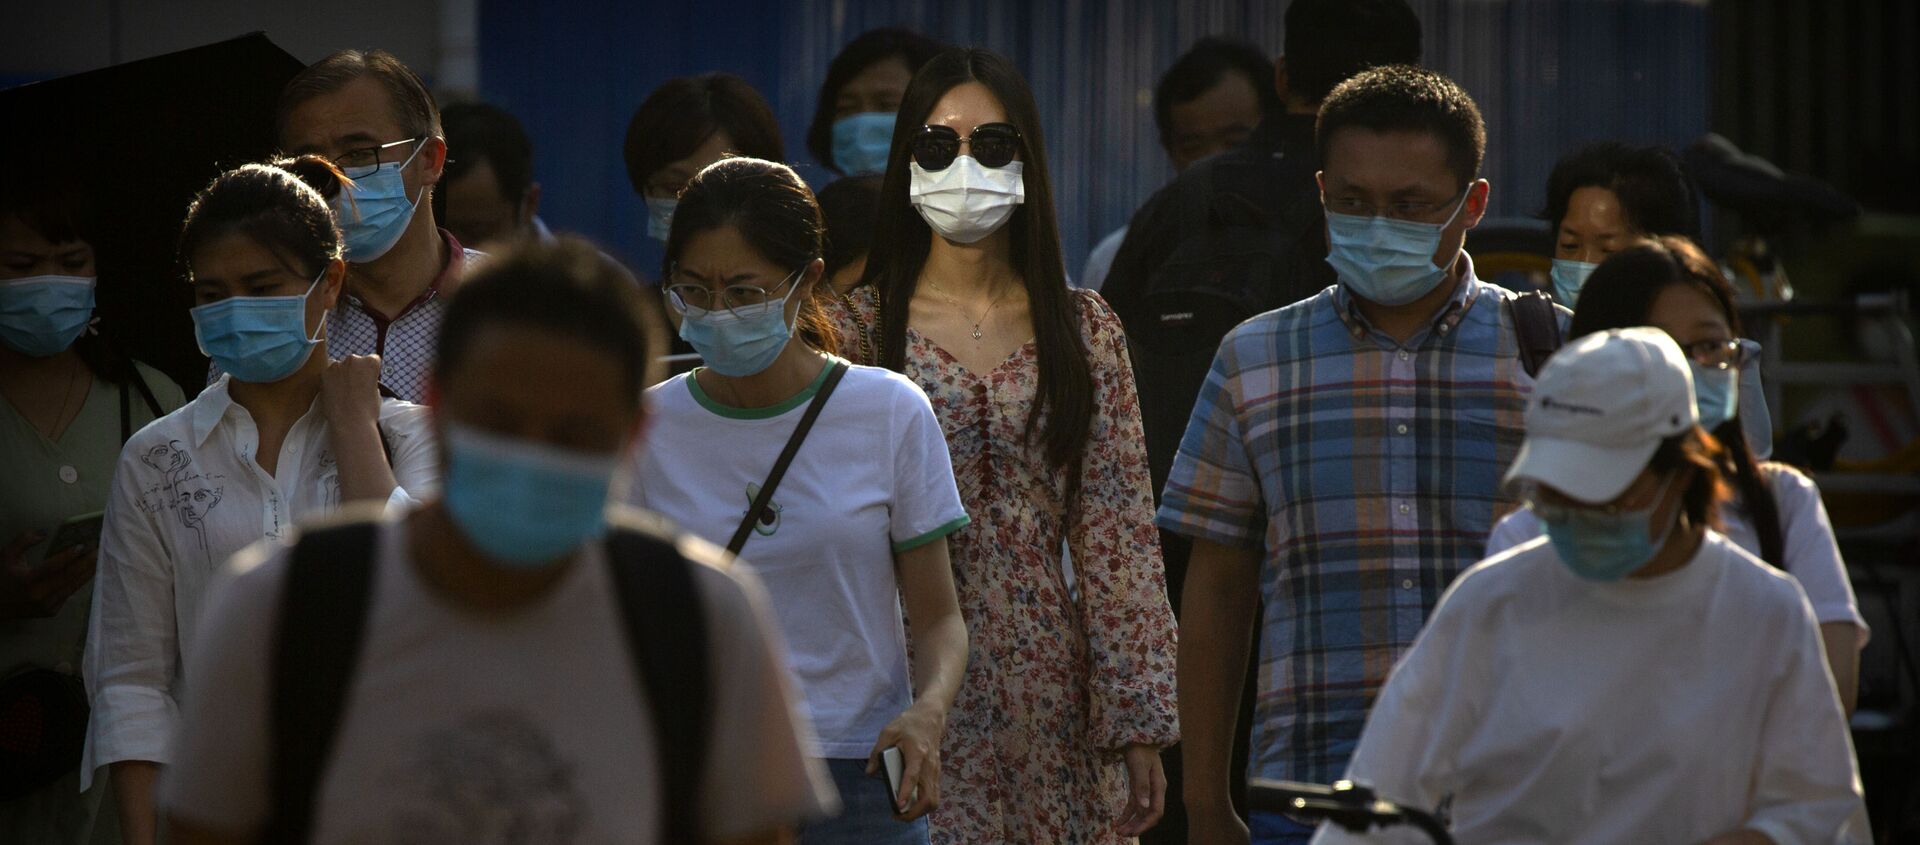 Жители Китая в масках во время пандемии коронавируса COVID 19 - Sputnik Грузия, 1920, 08.08.2021